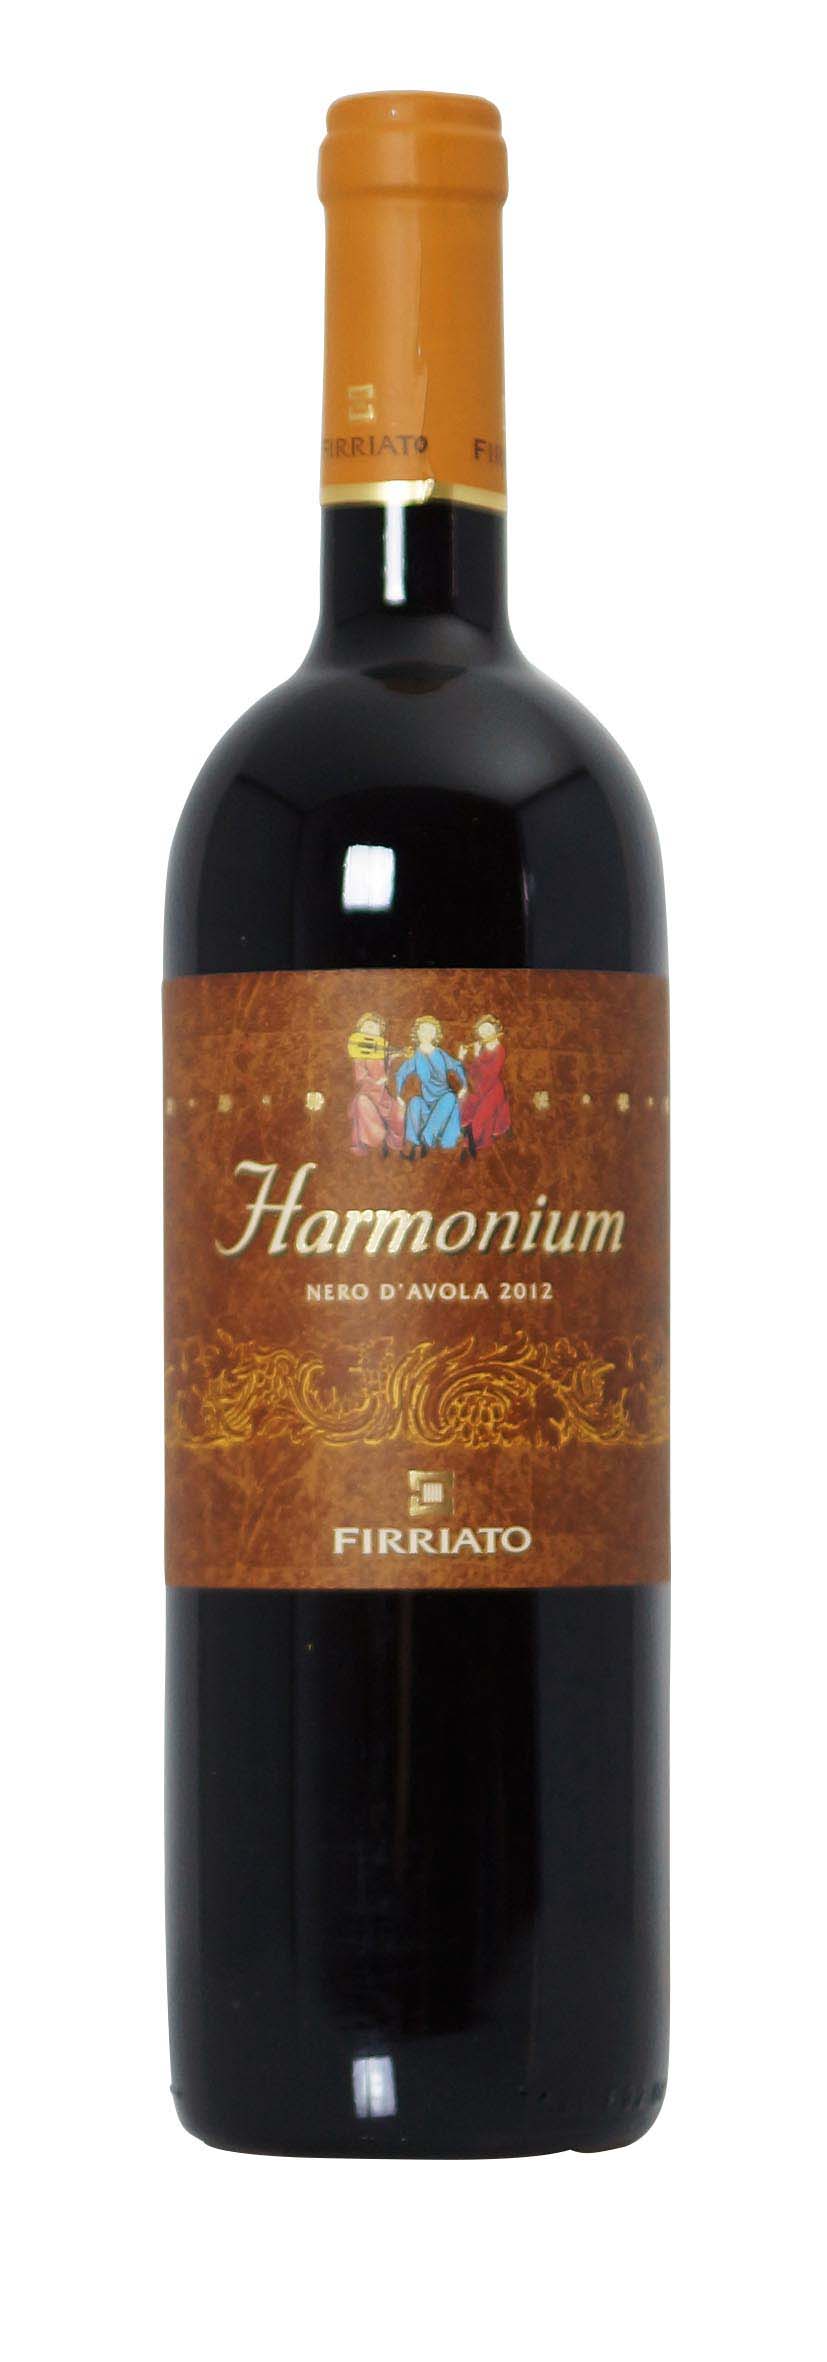 Terre Siciliane IGT Harmonium Nero d'Avola 2012